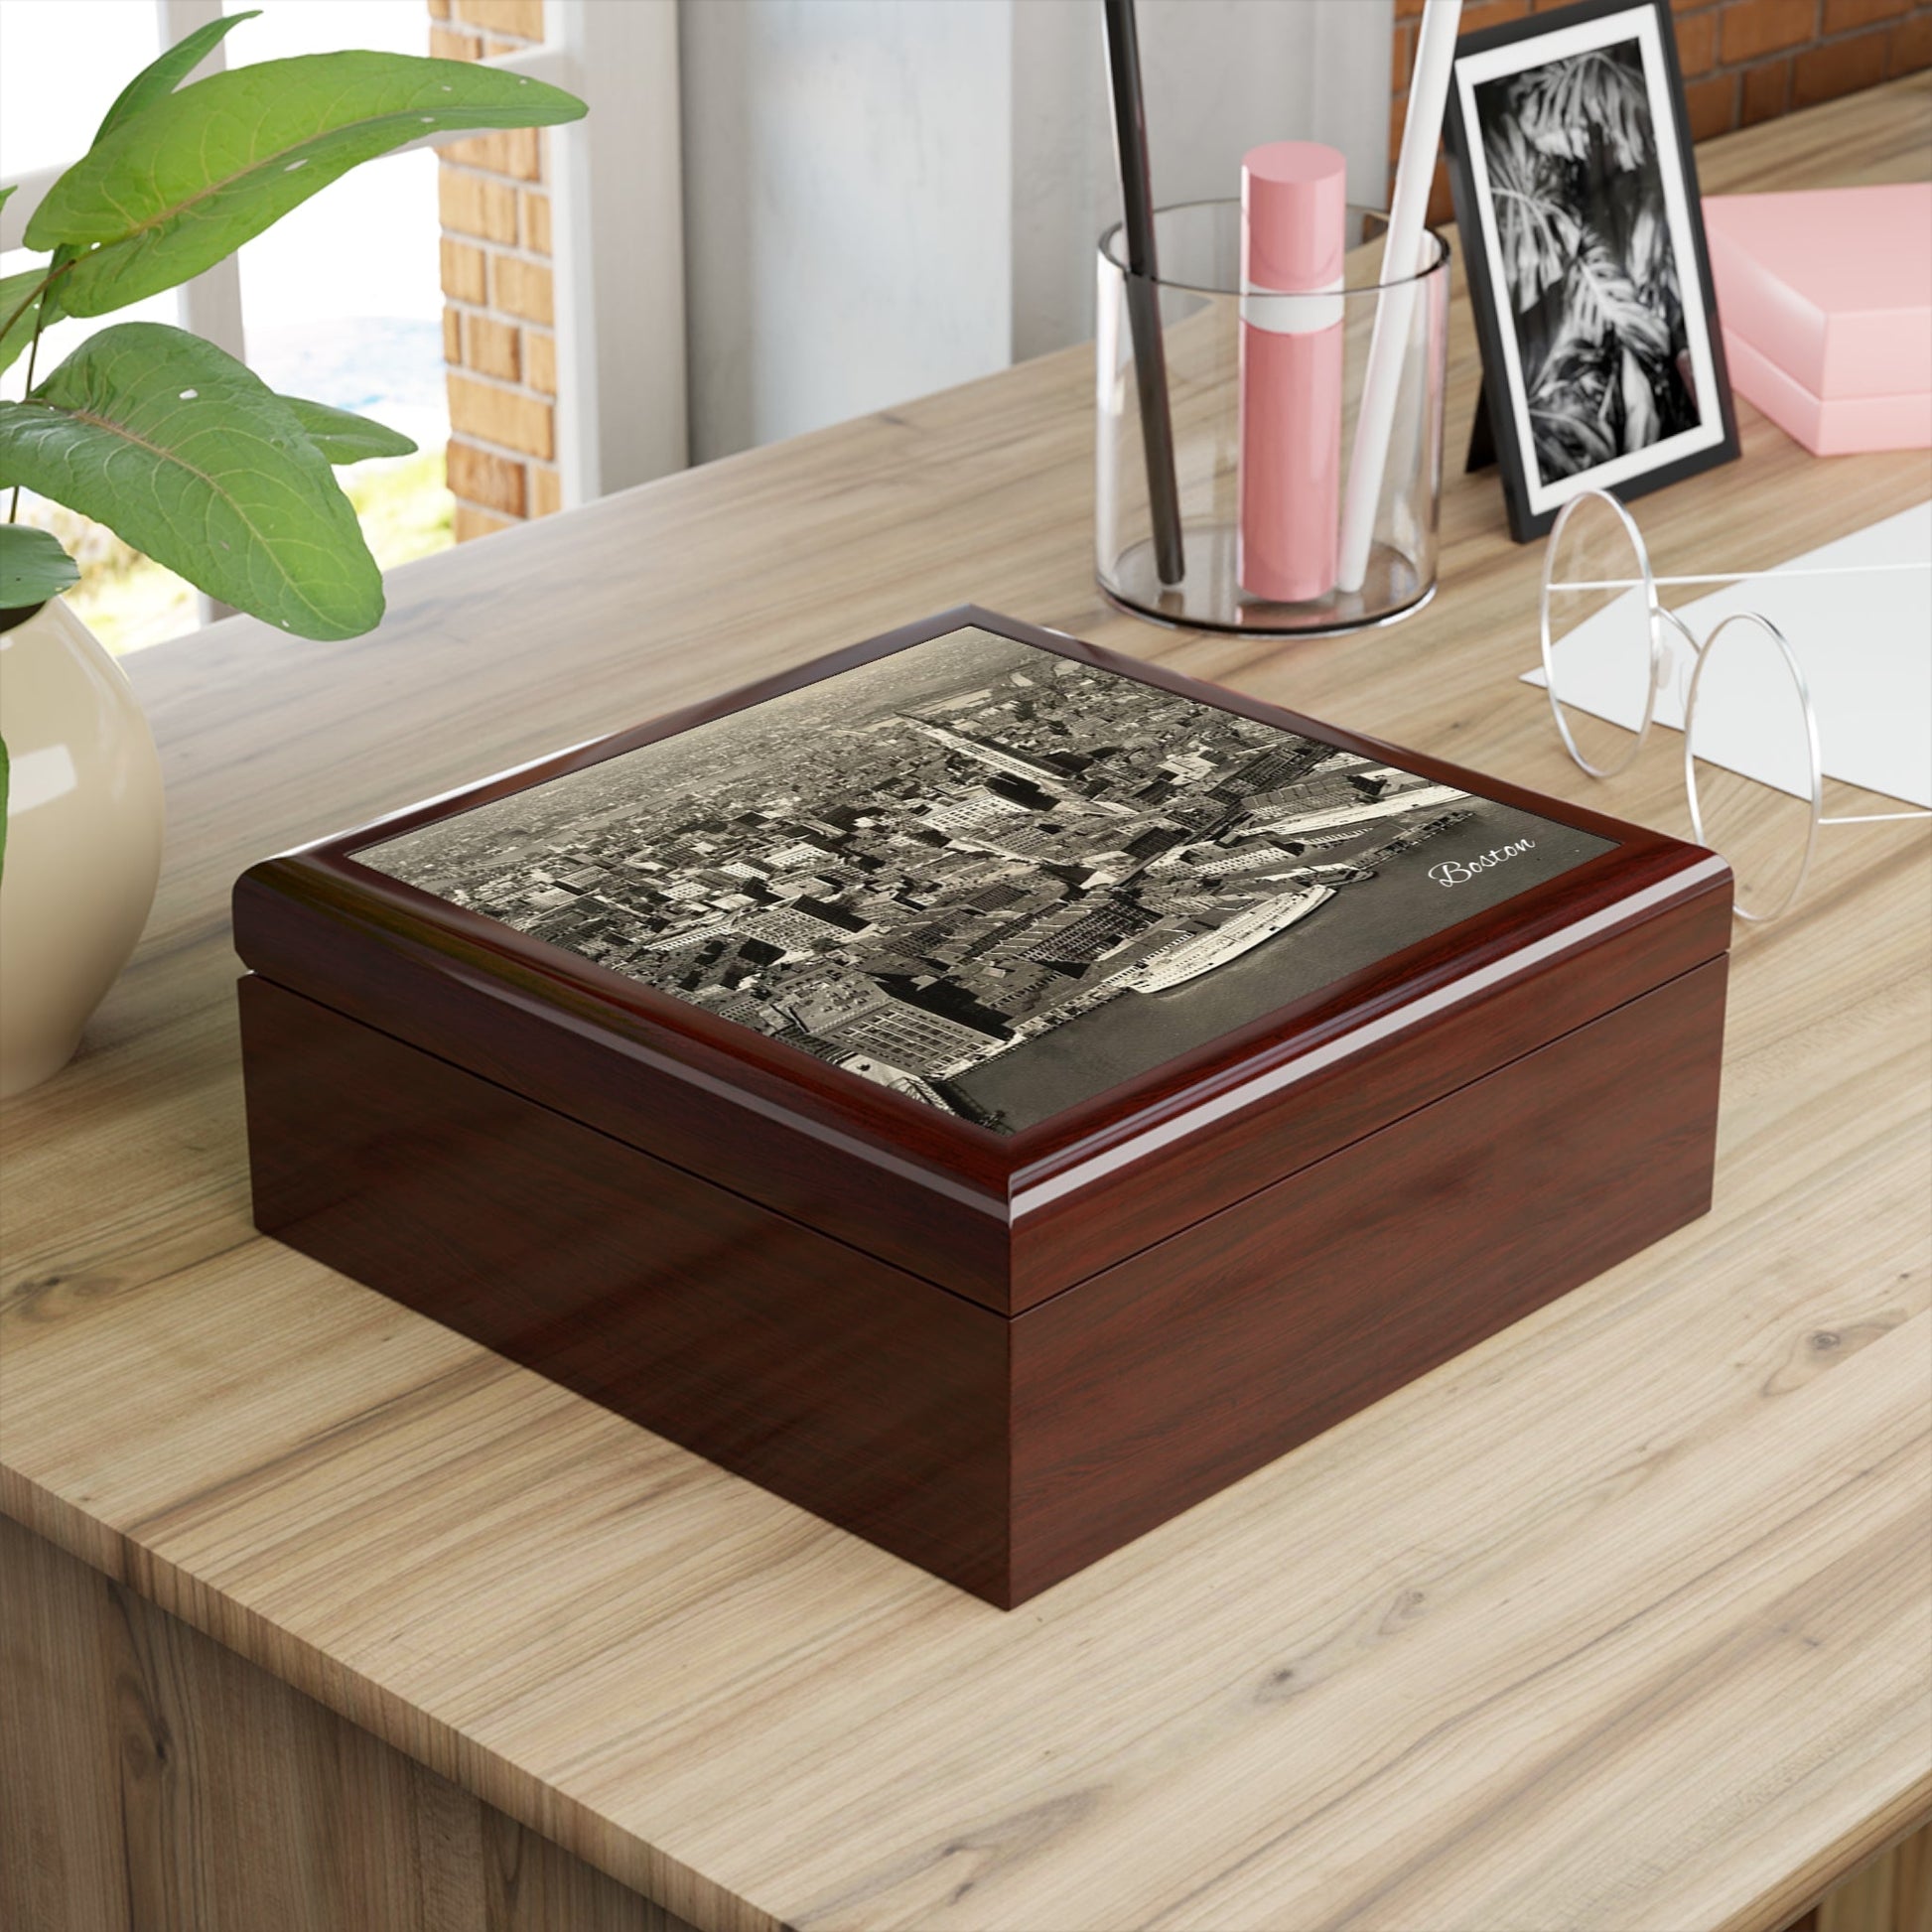 Boston Nostalgia Keepsake Jewelry Box with Ceramic Tile Cover